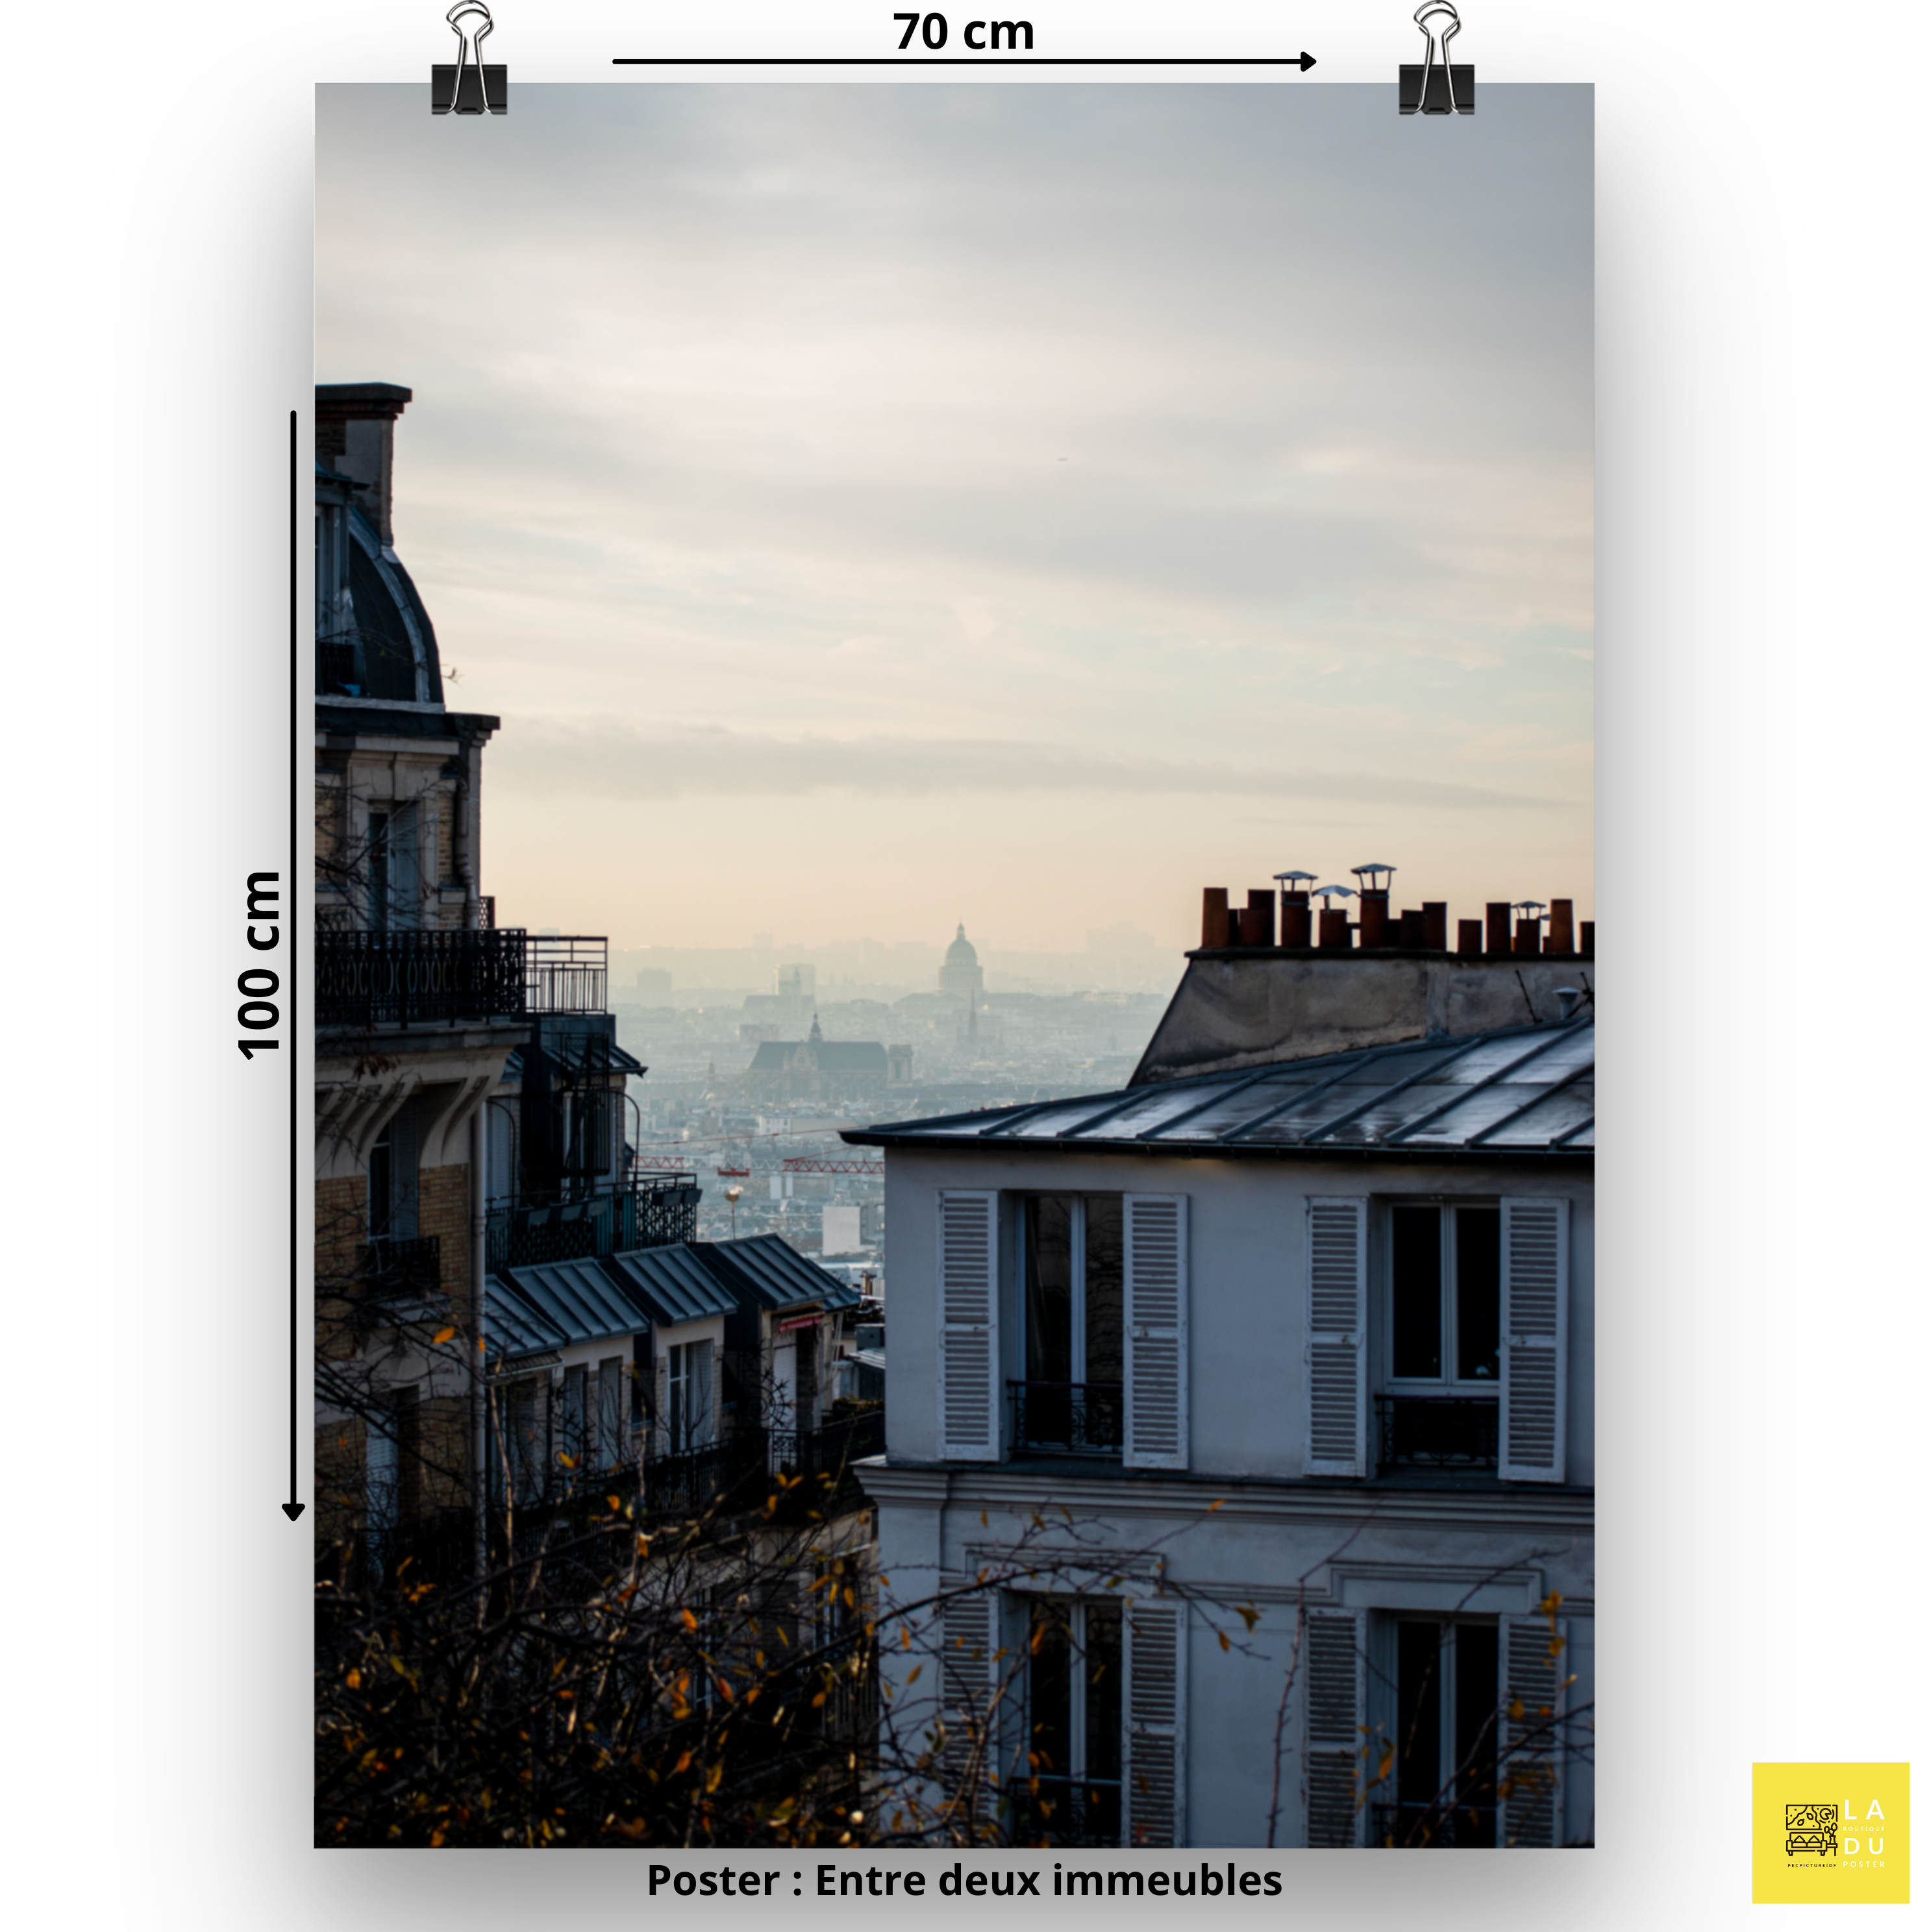 Entre deux immeubles - Poster - La boutique du poster Français